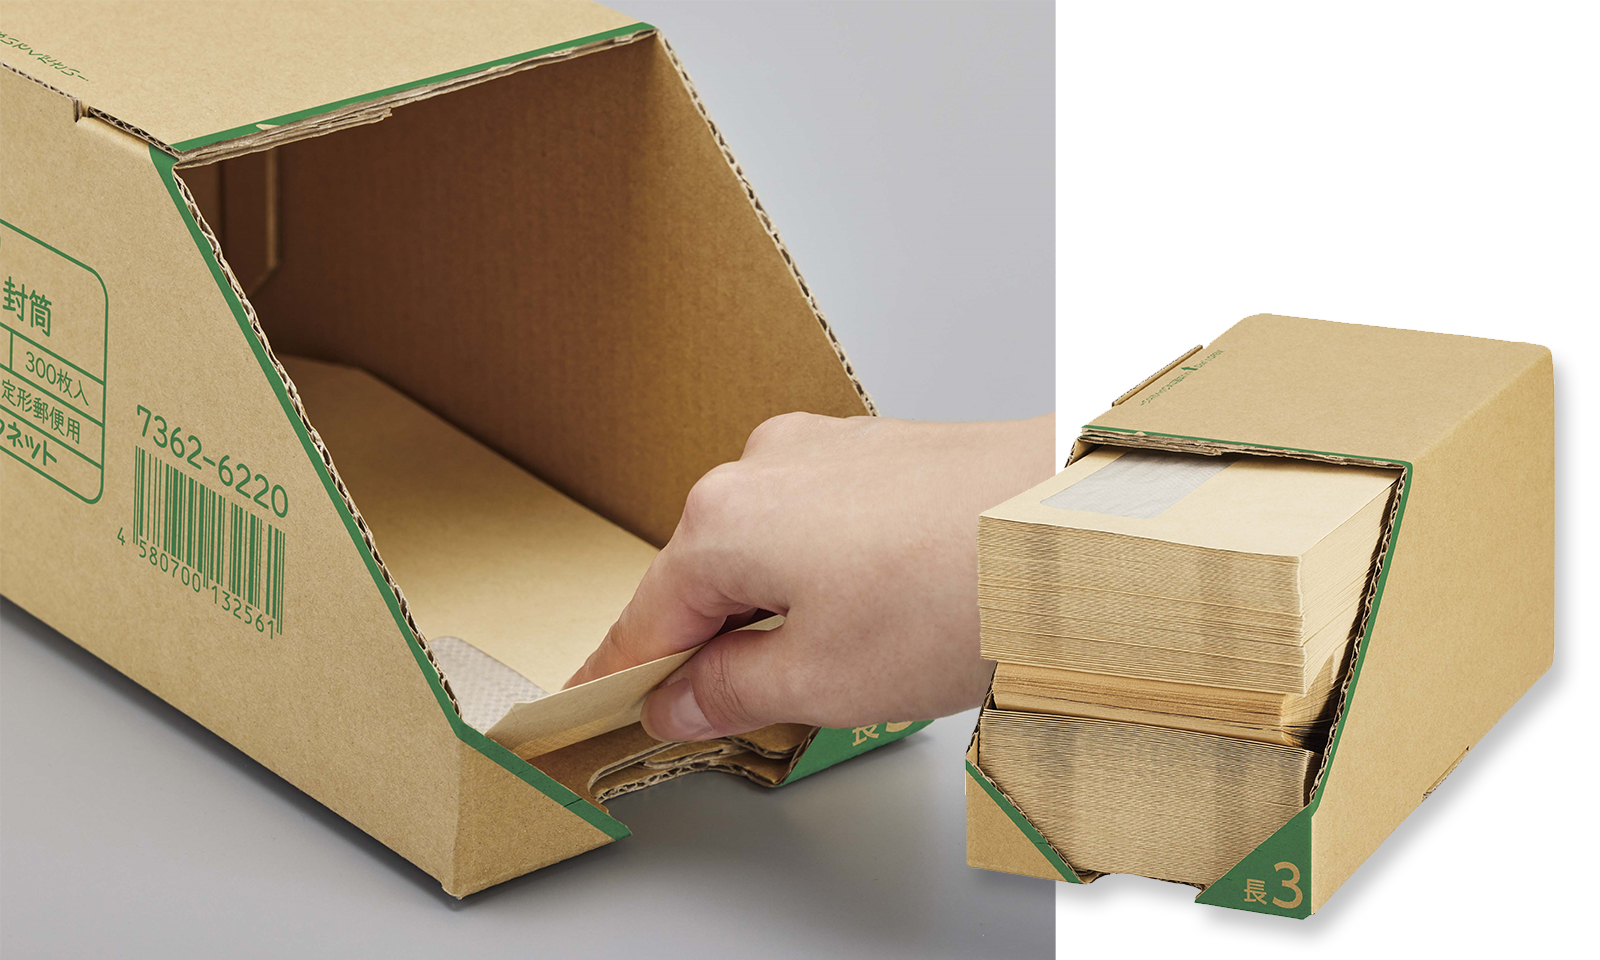 インクルーシブなモノ・コトづくりのプロセス「HOWS DESIGN （ハウズデザイン）」から生まれたカウネットの「取り出しやすい箱入り封筒」をご紹介